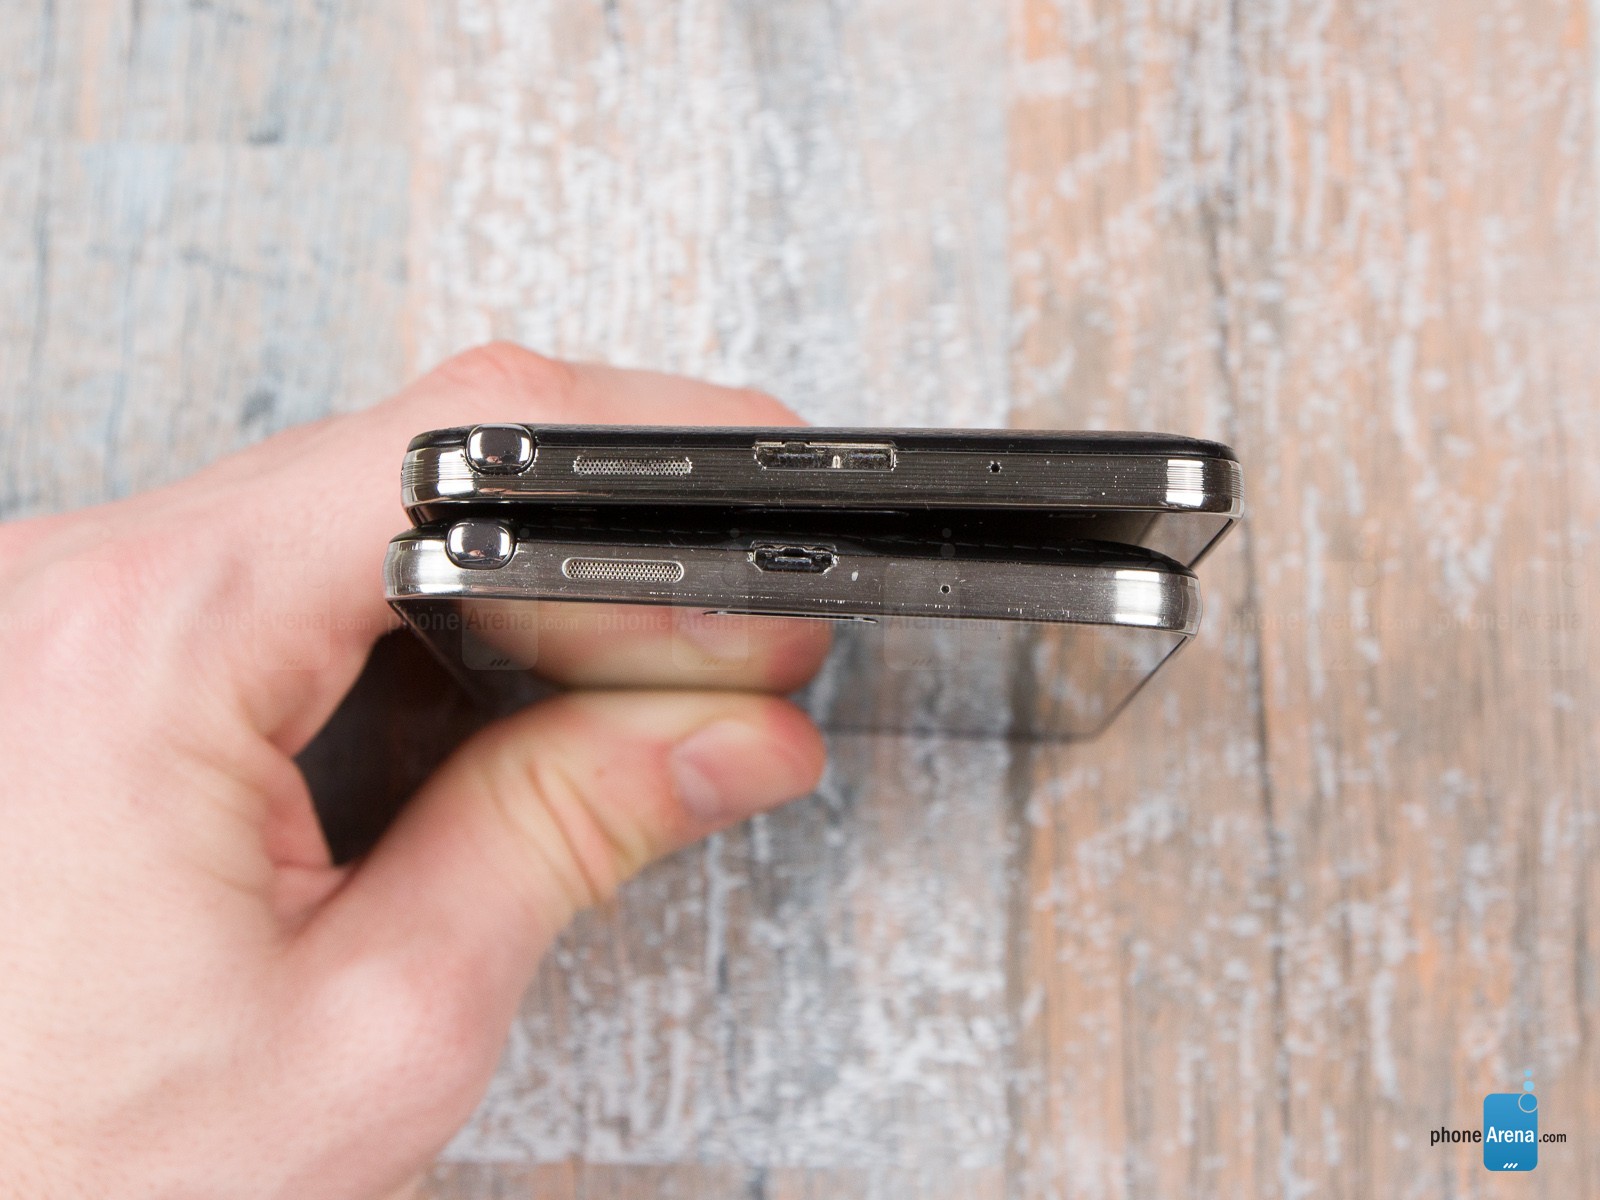 Galaxy Note 3 Neo chỉ được trang bị kết nối microUSB thay vì cả USB 3.0 như người anh em của mình. Đây là điều dễ hiểu bởi hãng sản xuất xứ Kim Chi cần phải rút gọn các tính năng để giảm giá bán.